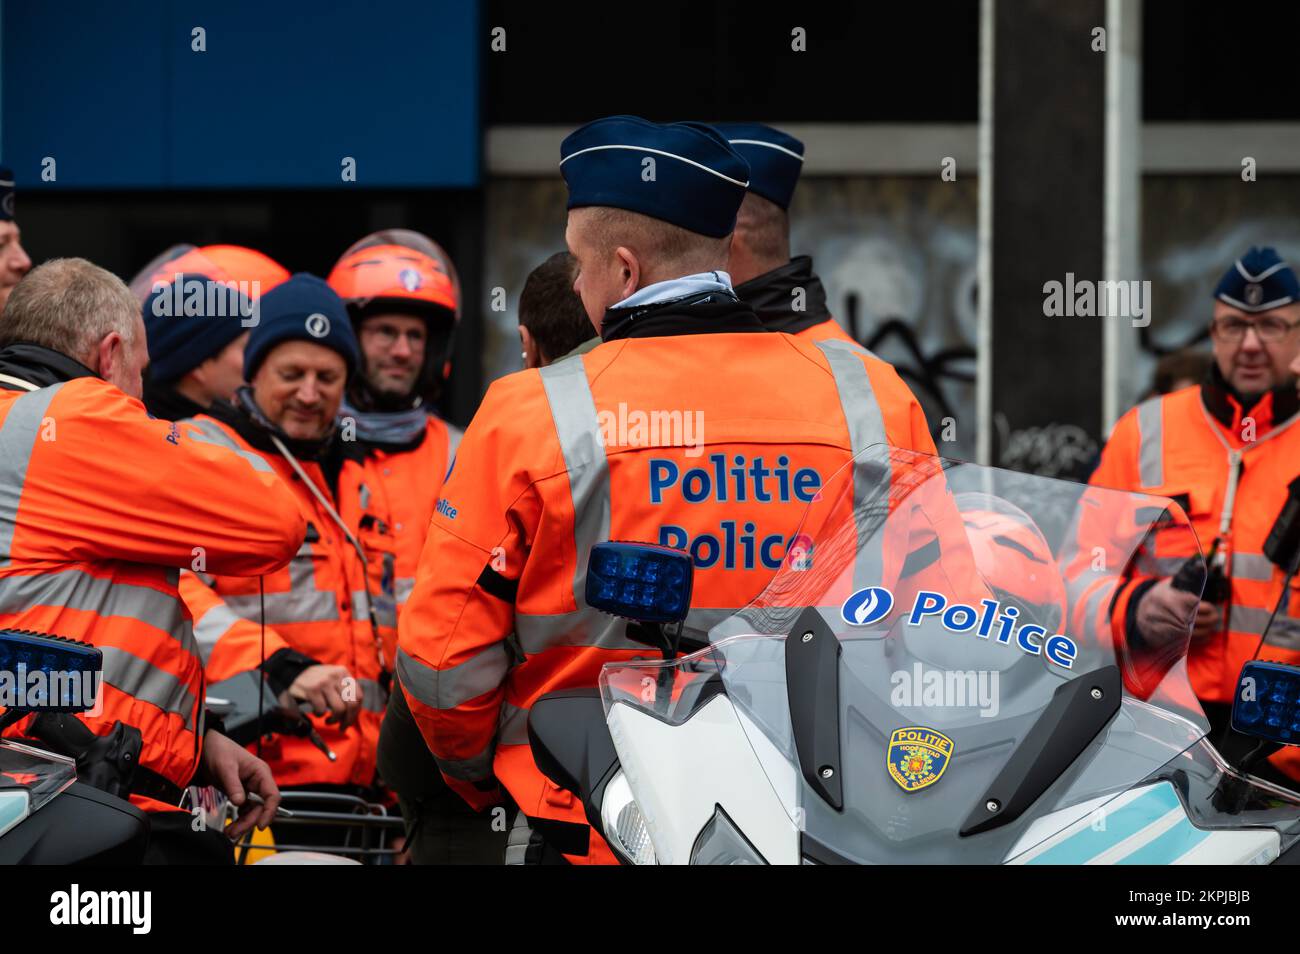 Brussels Capital Region, Belgio - 11 28 2022 - la polizia dimostra contro la violenza contro i poliziotti. Dimostranti con moto indossate in arancione Foto Stock